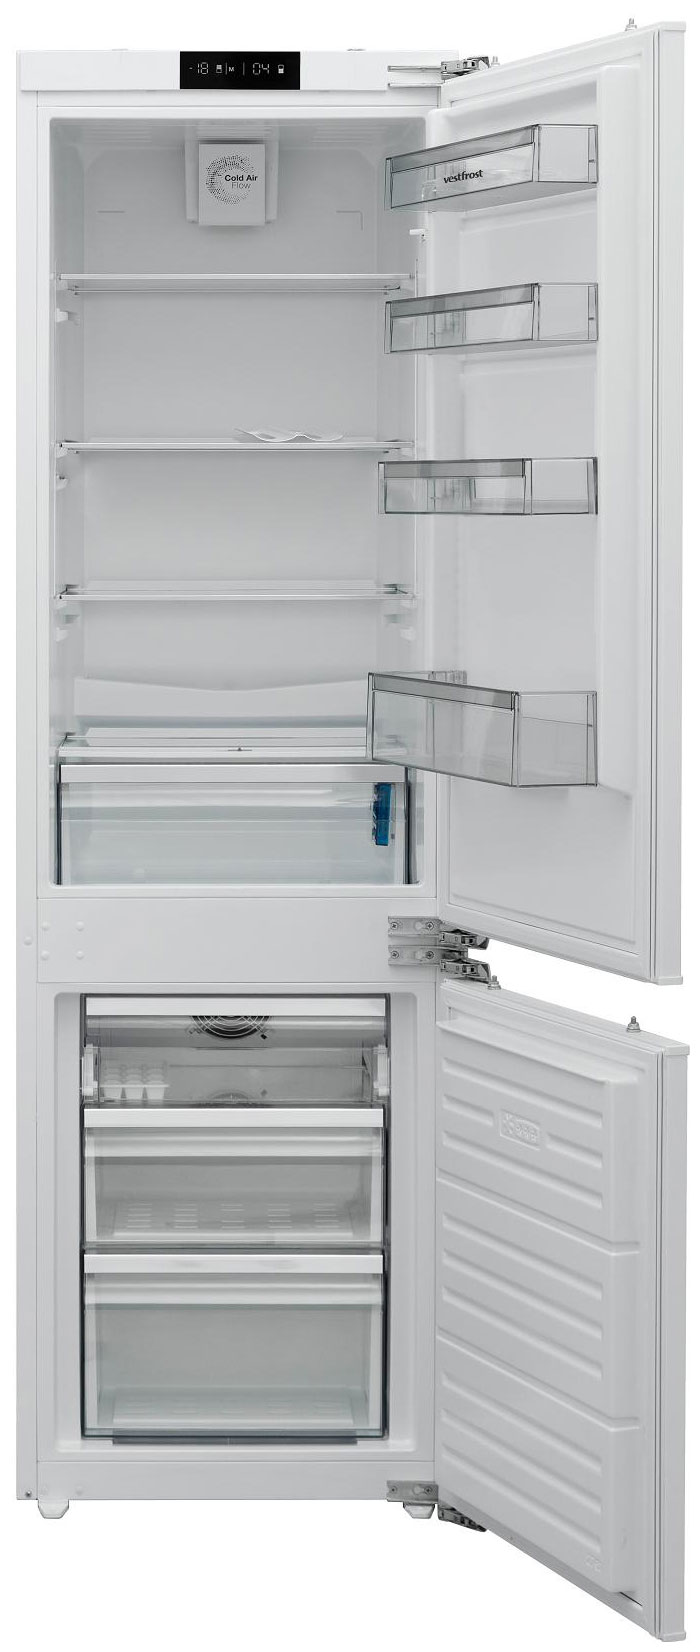 Встраиваемый двухкамерный холодильник Vestfrost VFBI17F00 встраиваемый двухкамерный холодильник kuppersberg nbm 17863